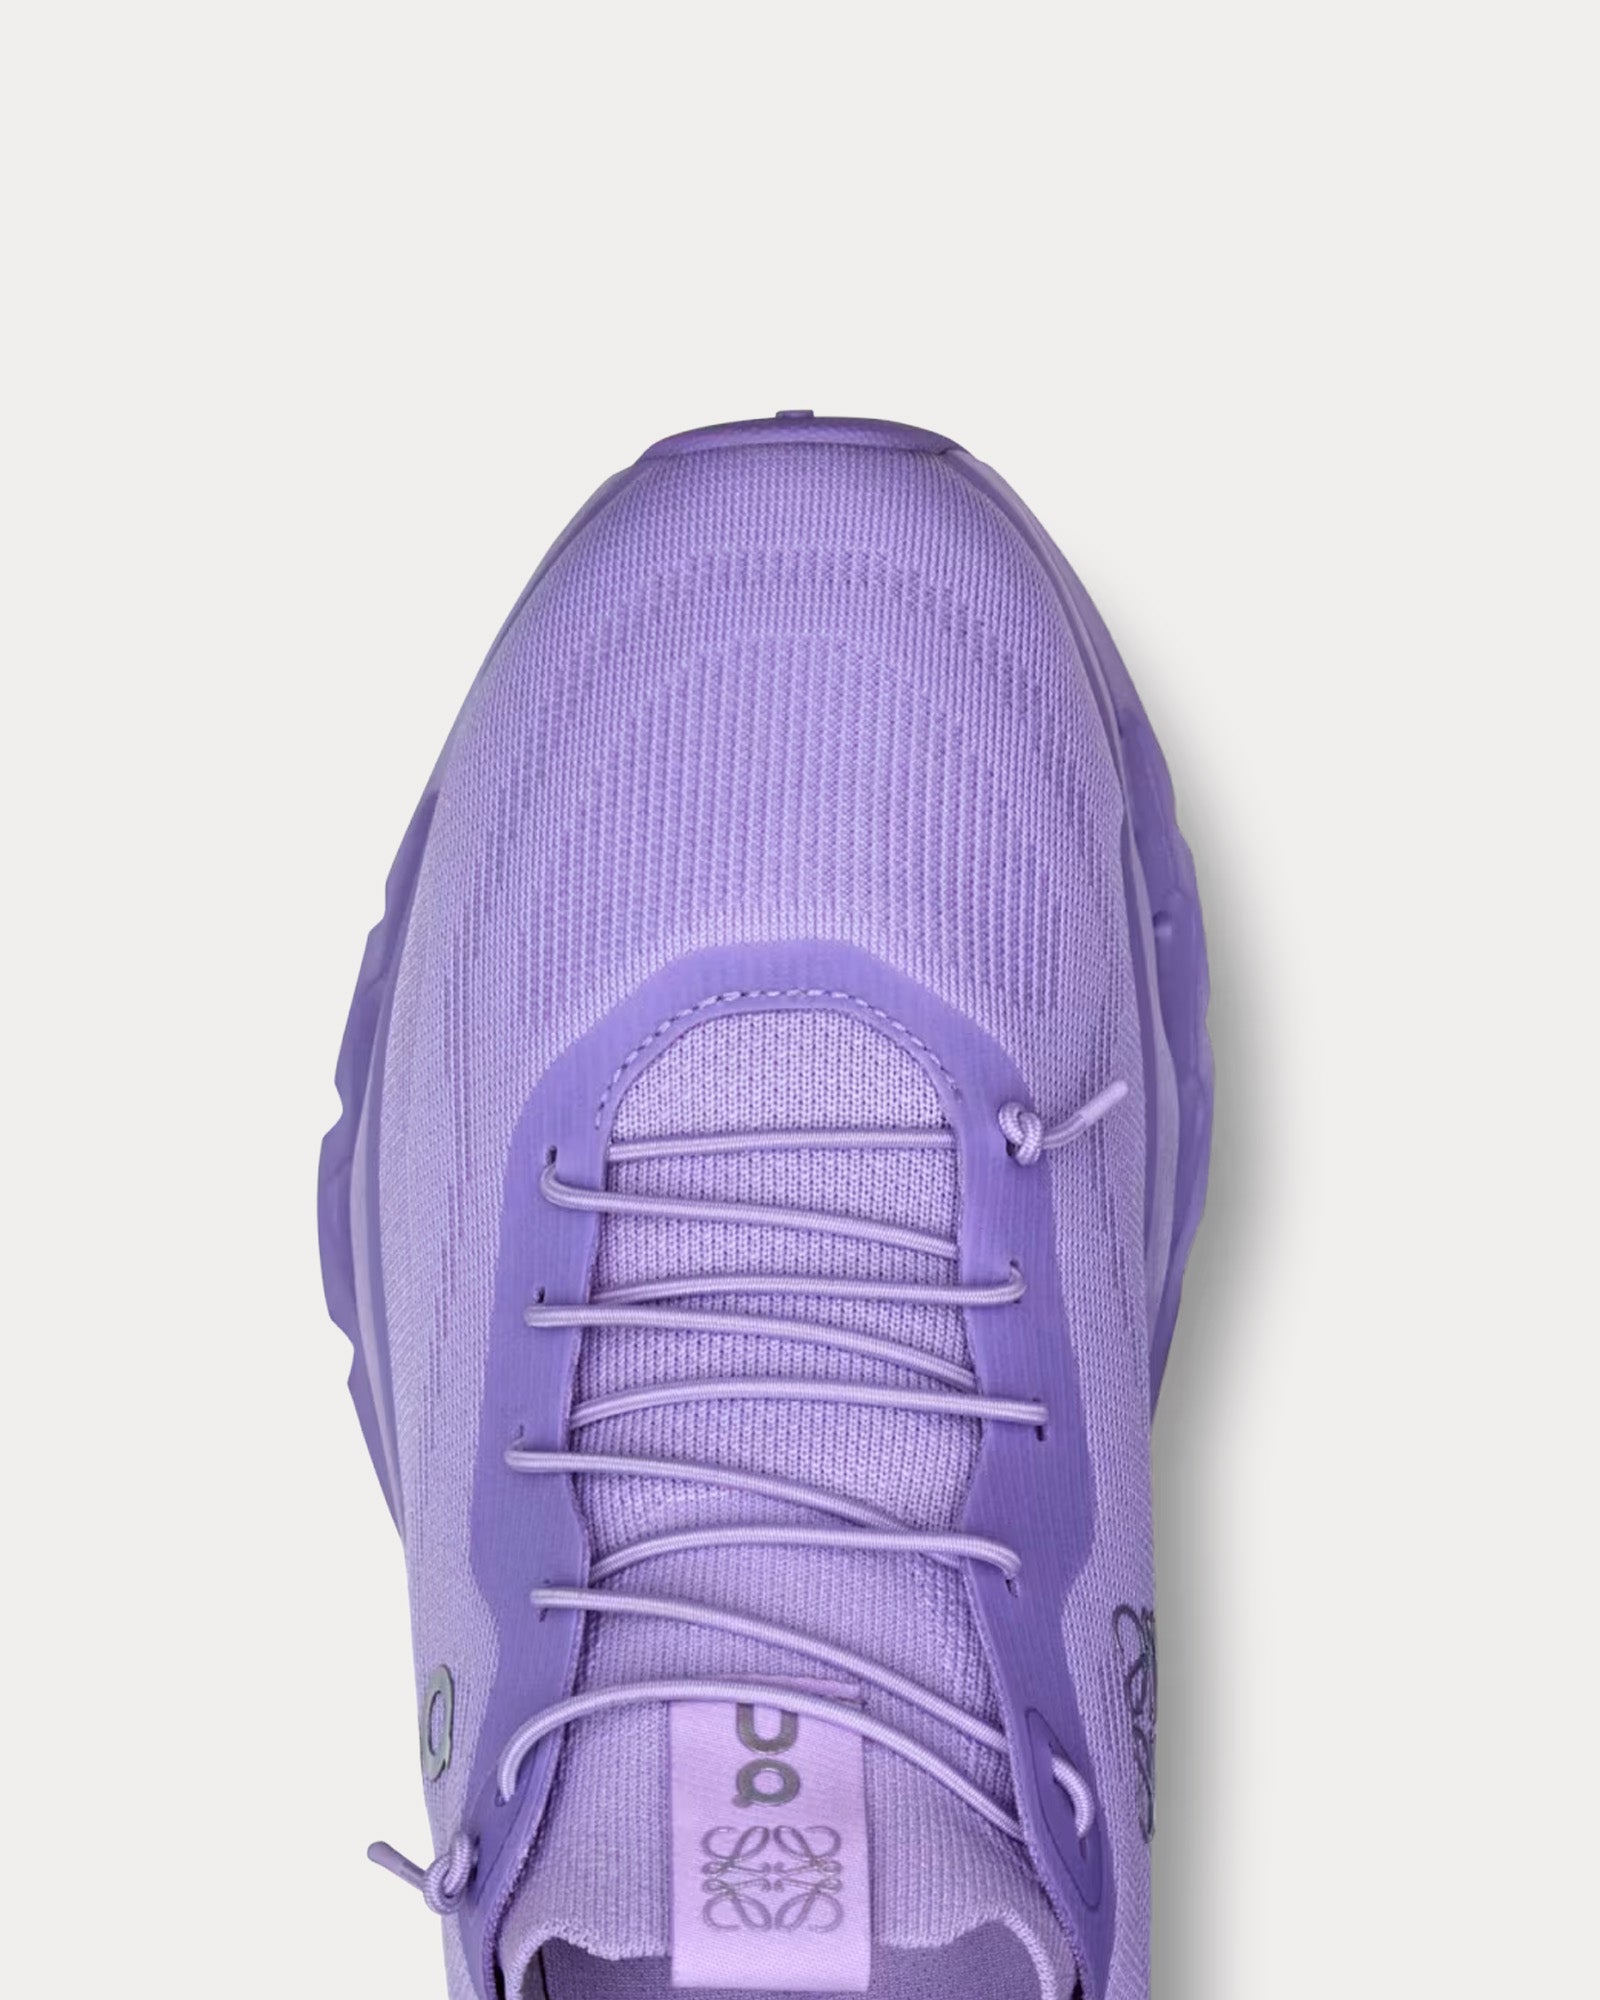 On Running x Loewe - Cloudtilt Purple Rose Low Top Sneakers